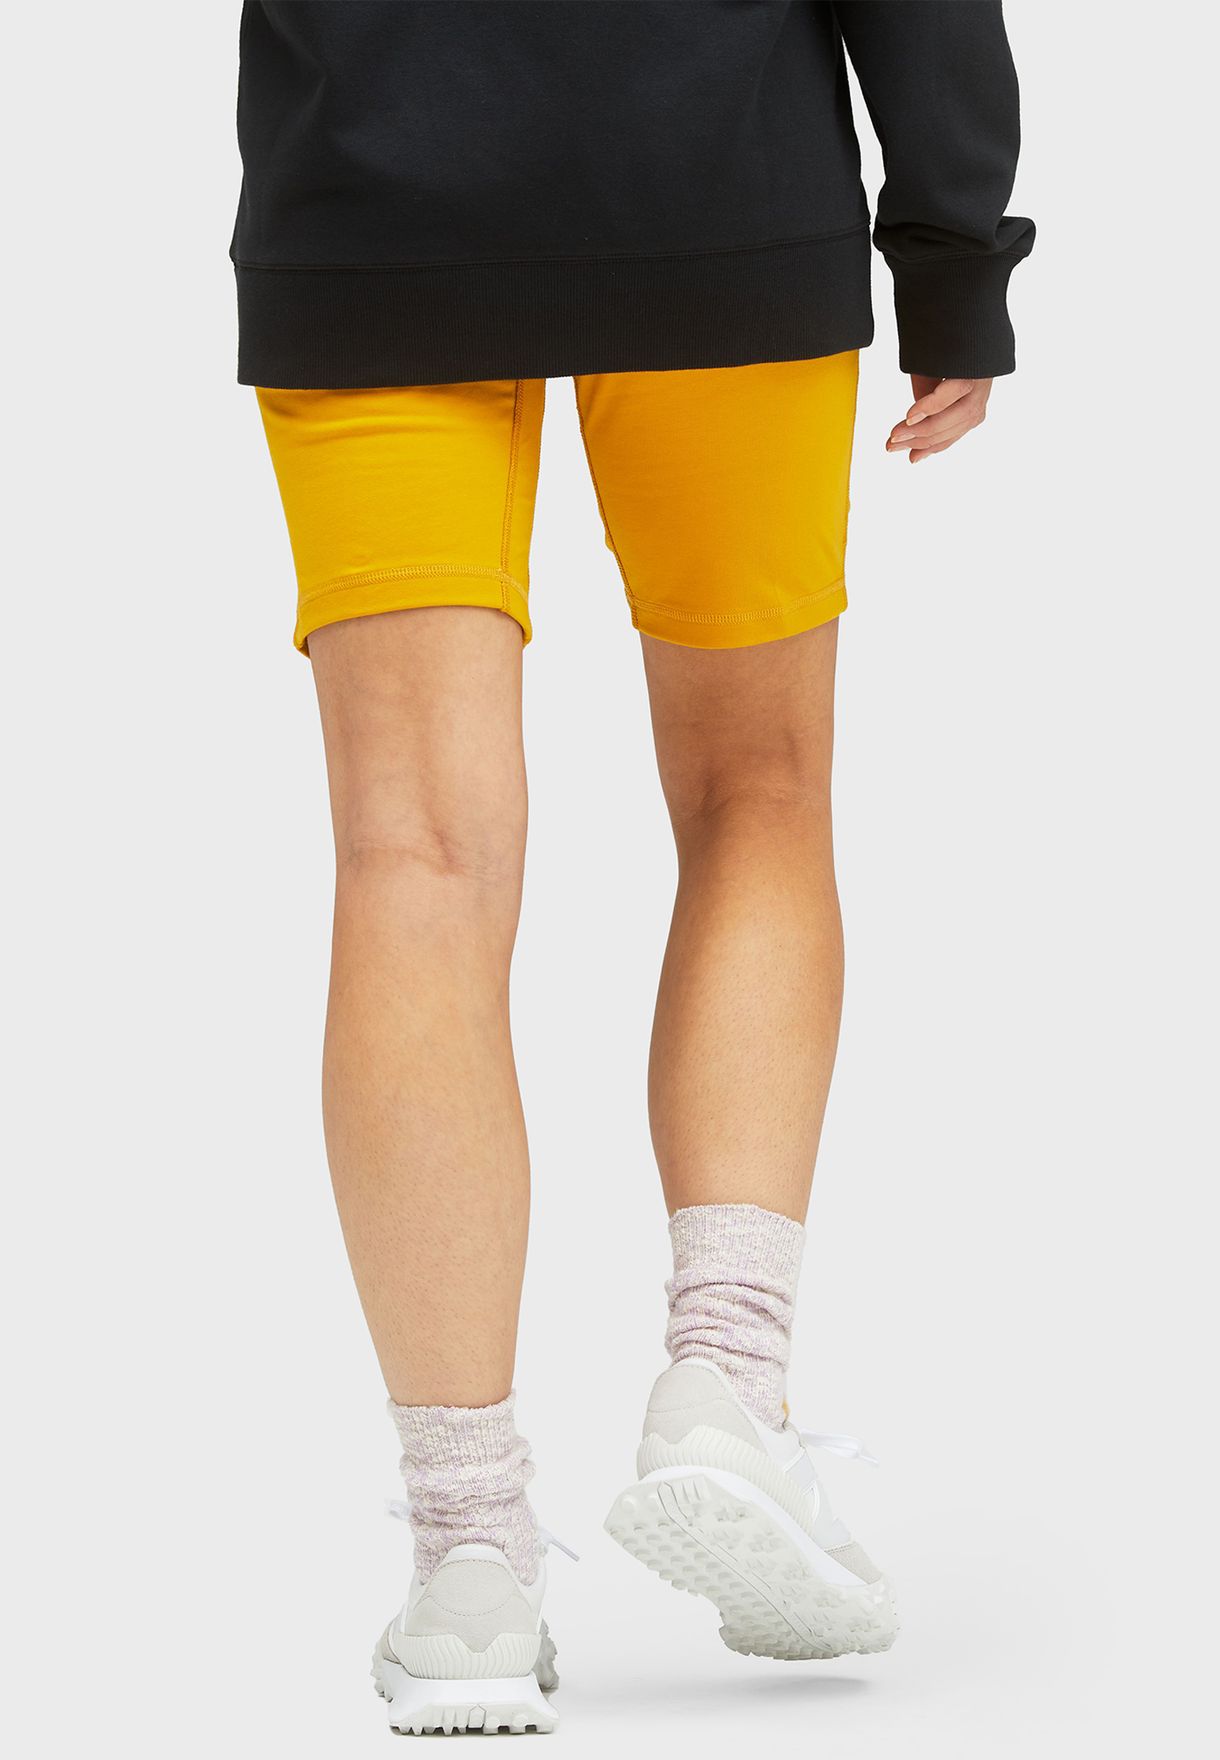 Essential Legging Shorts